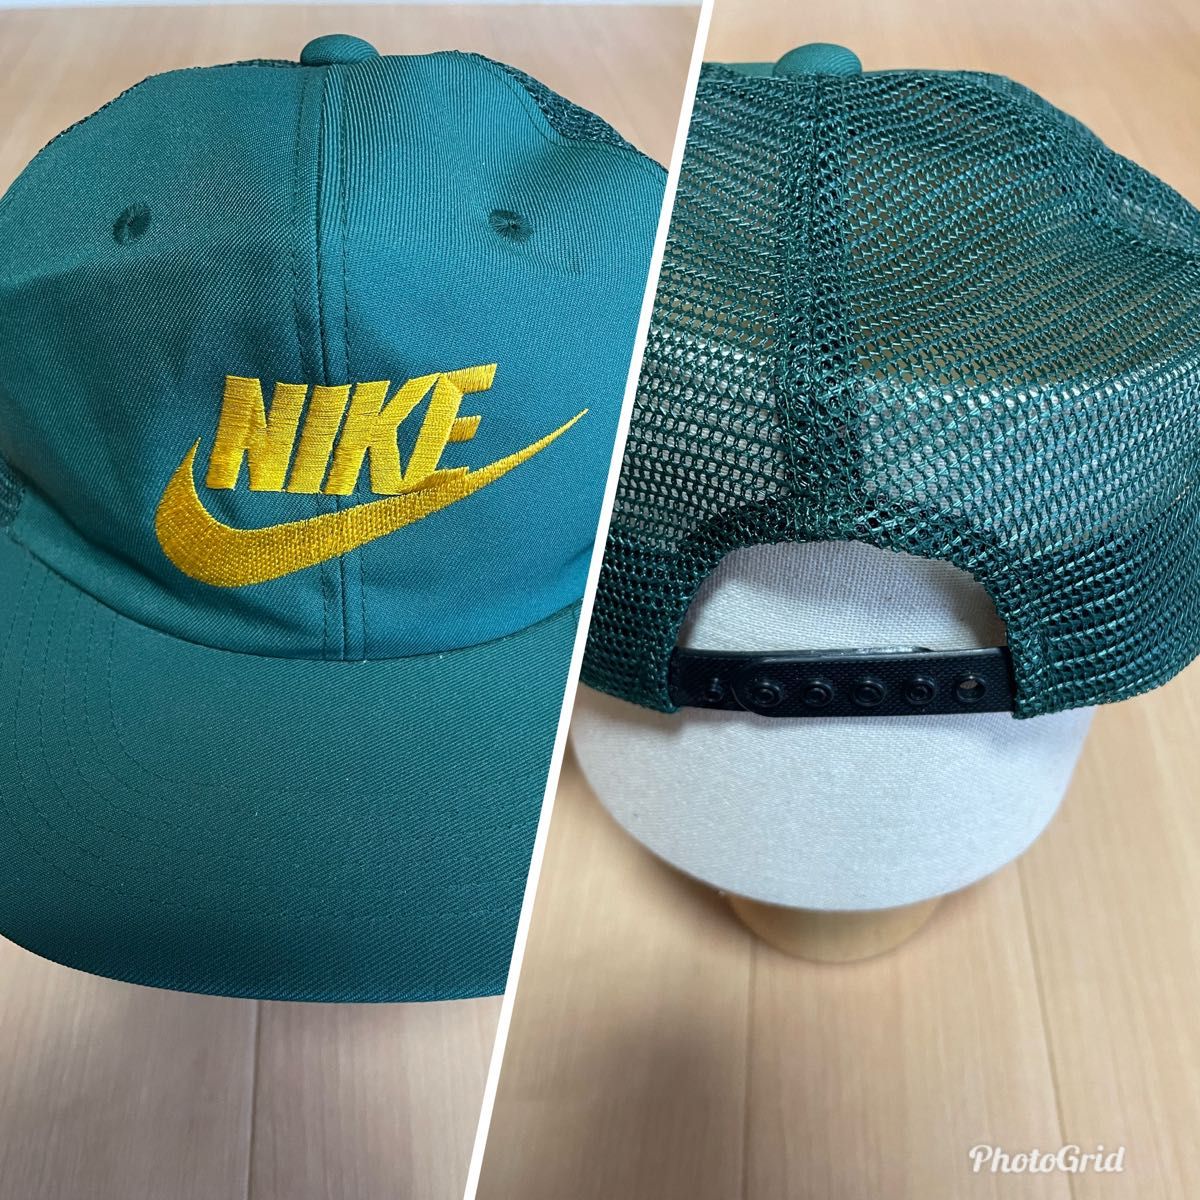 Nike ナイキ 90s オリジナル キャップ cap 帽子 ヴィンテージ デット